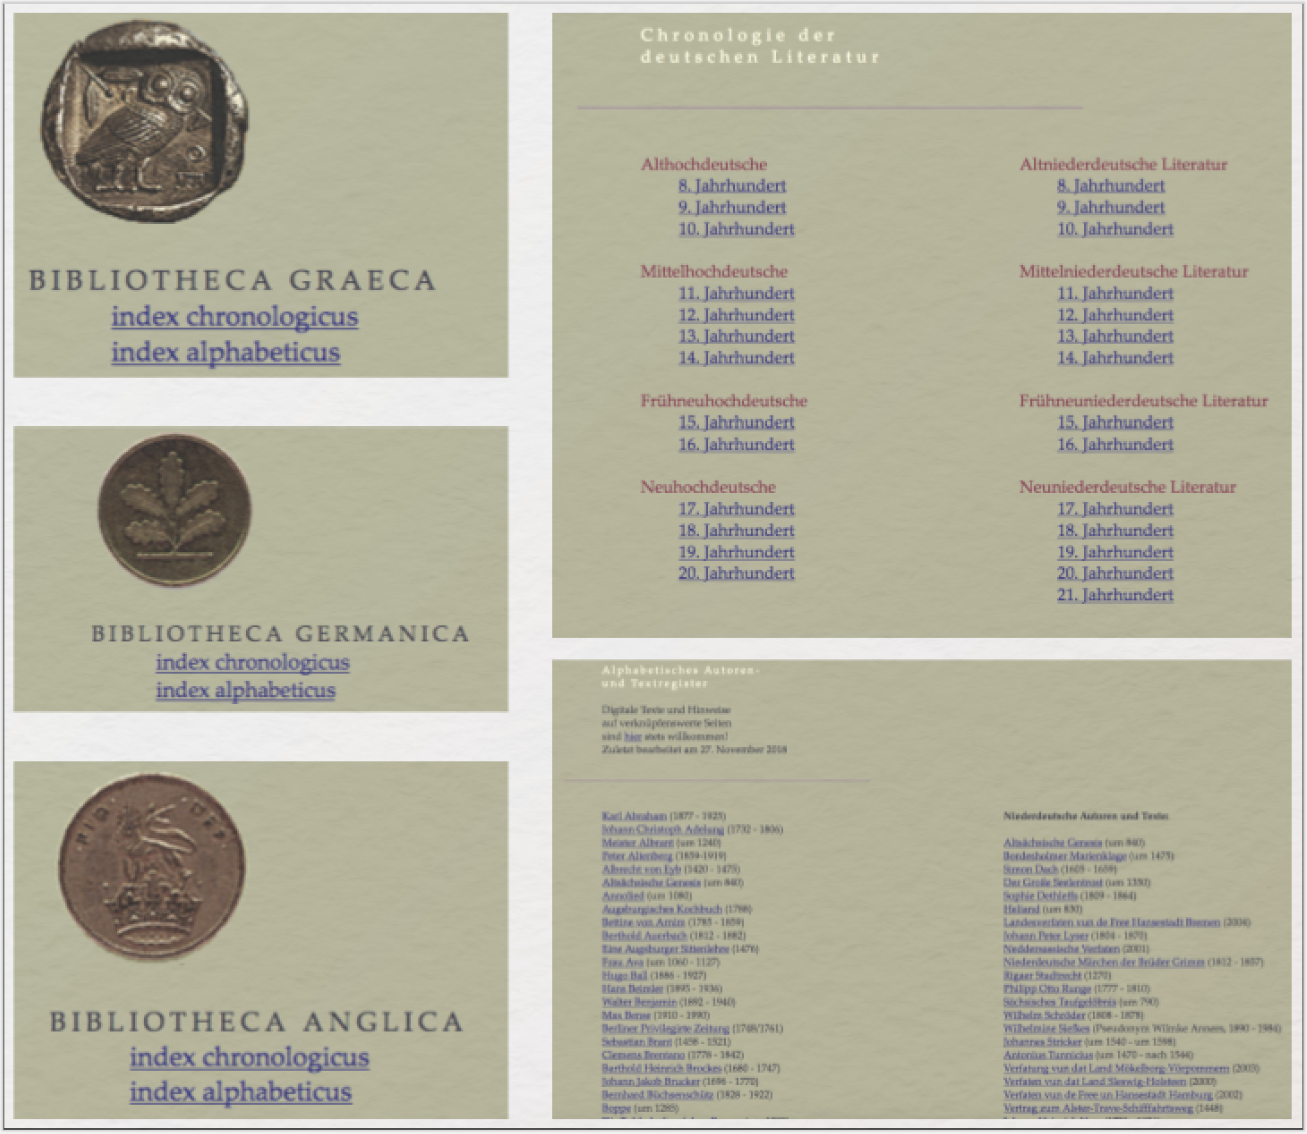 Bibliotheca Augustana: Das Korpus beinhaltet 15 digitale Textsammlungen mit unterschiedlichen Sammelschwerpunkten